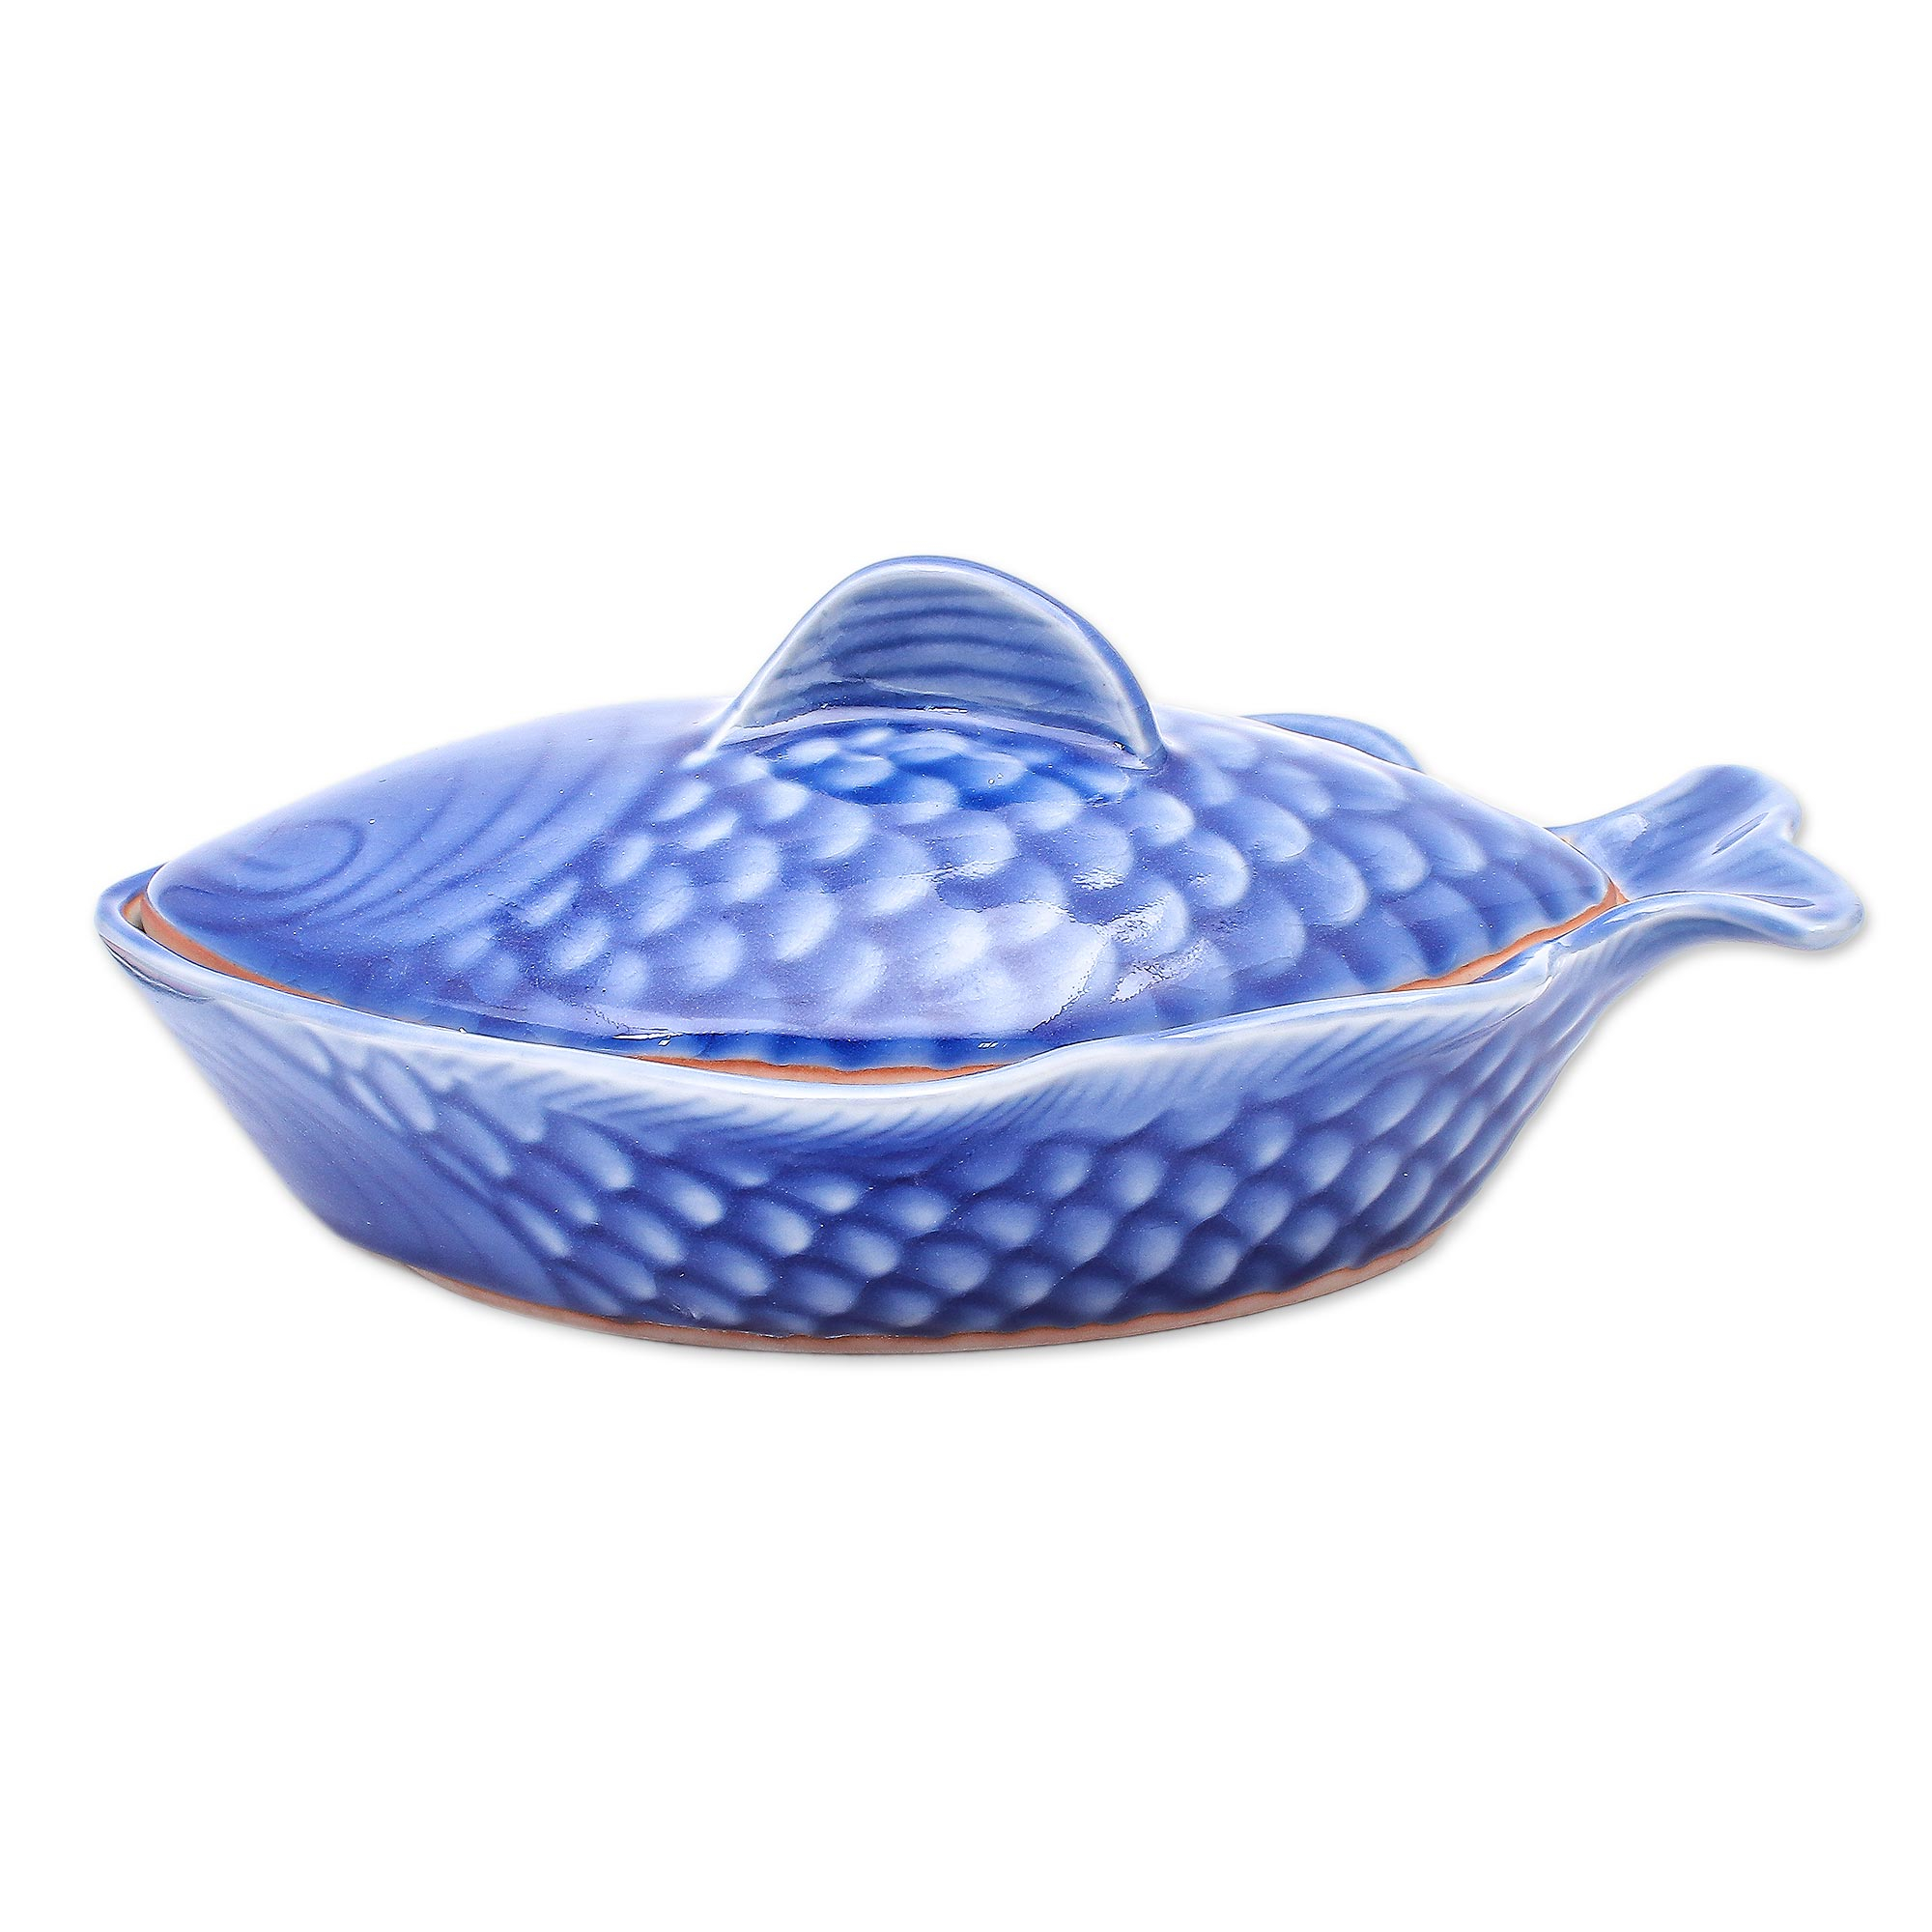 fish bowl lid